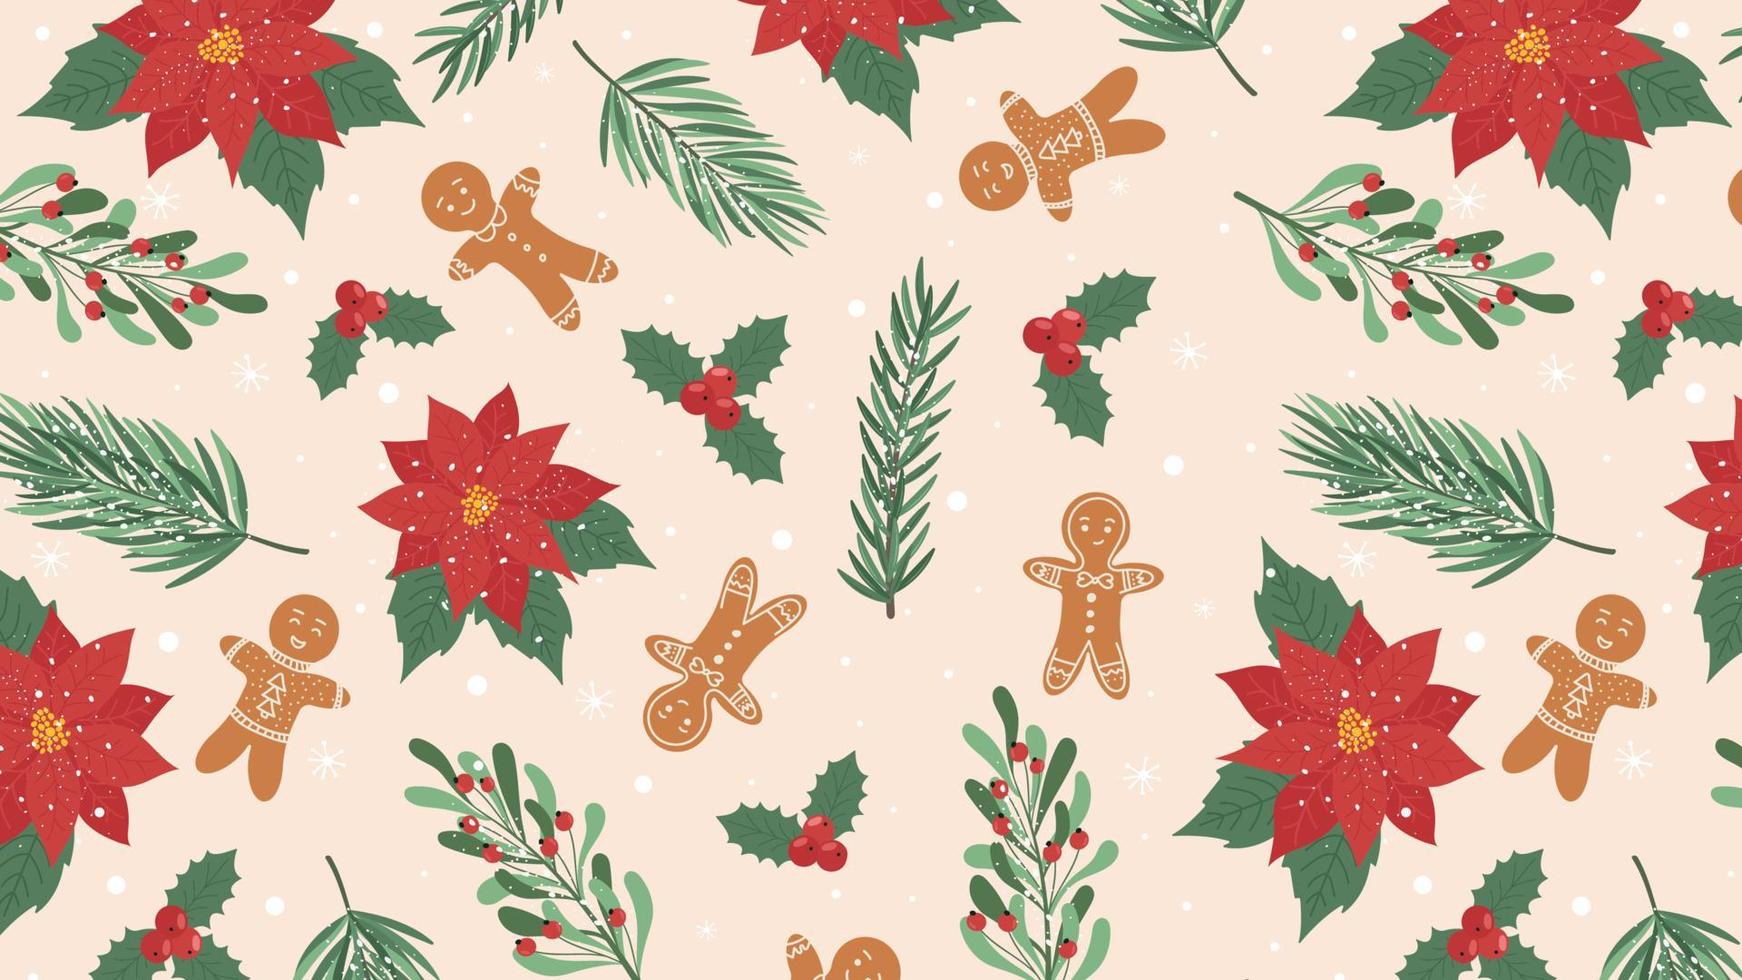 nahtlose Weihnachten horizontaler Hintergrund mit Ästen, Lebkuchenmann. vektor für druck, verpackung, geschenkpapier